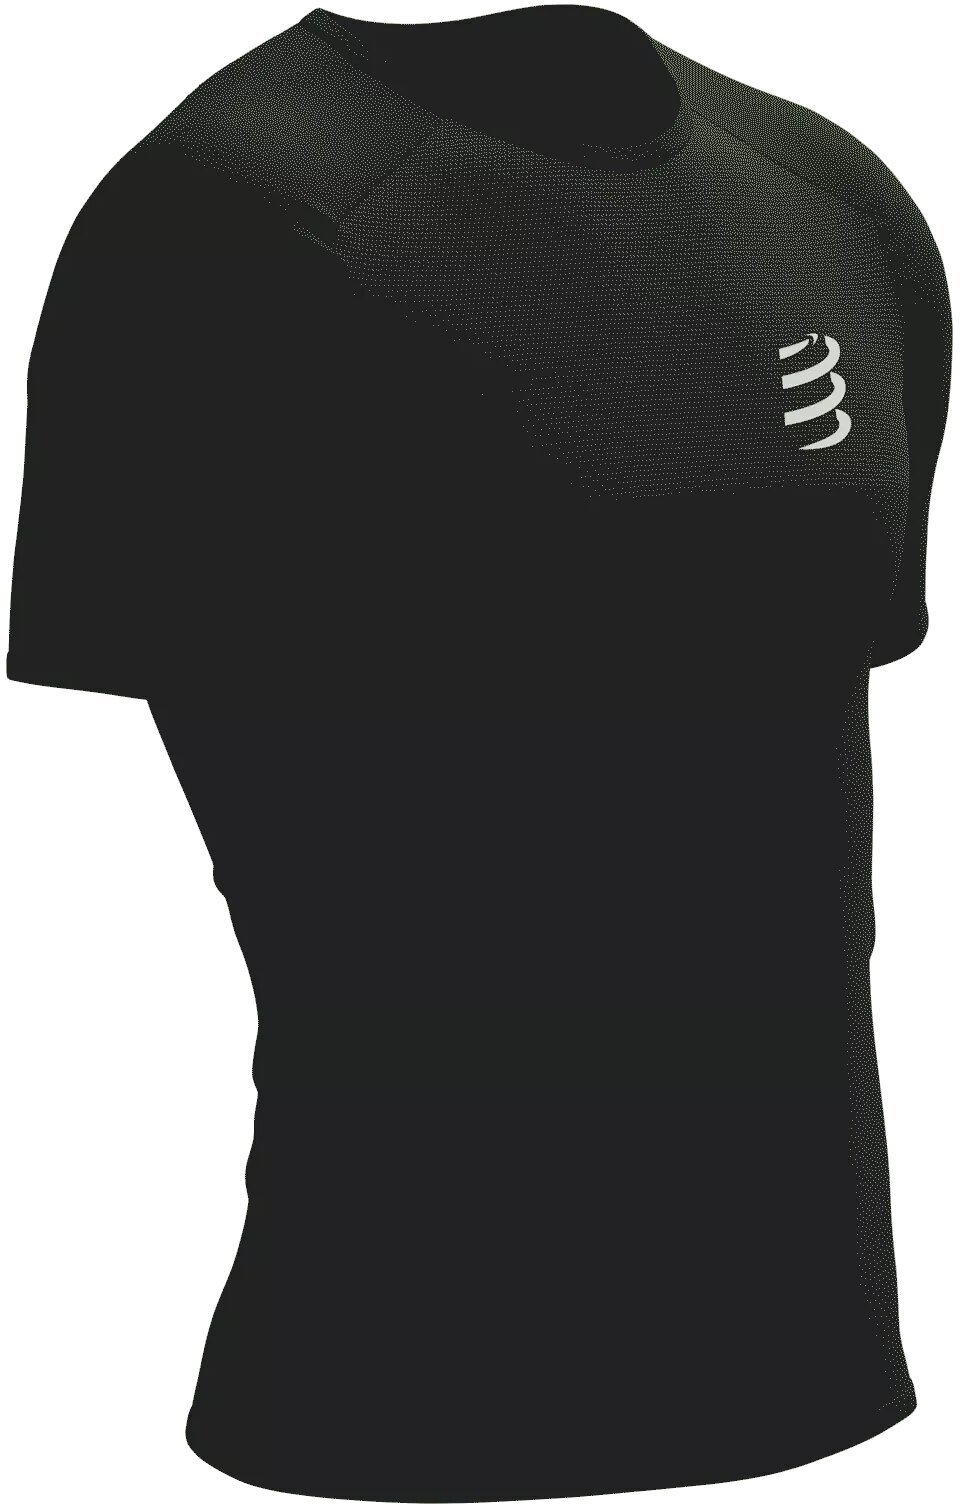 Compressport Performance SS Tshirt M Black/White M Bežecké tričko s krátkym rukávom